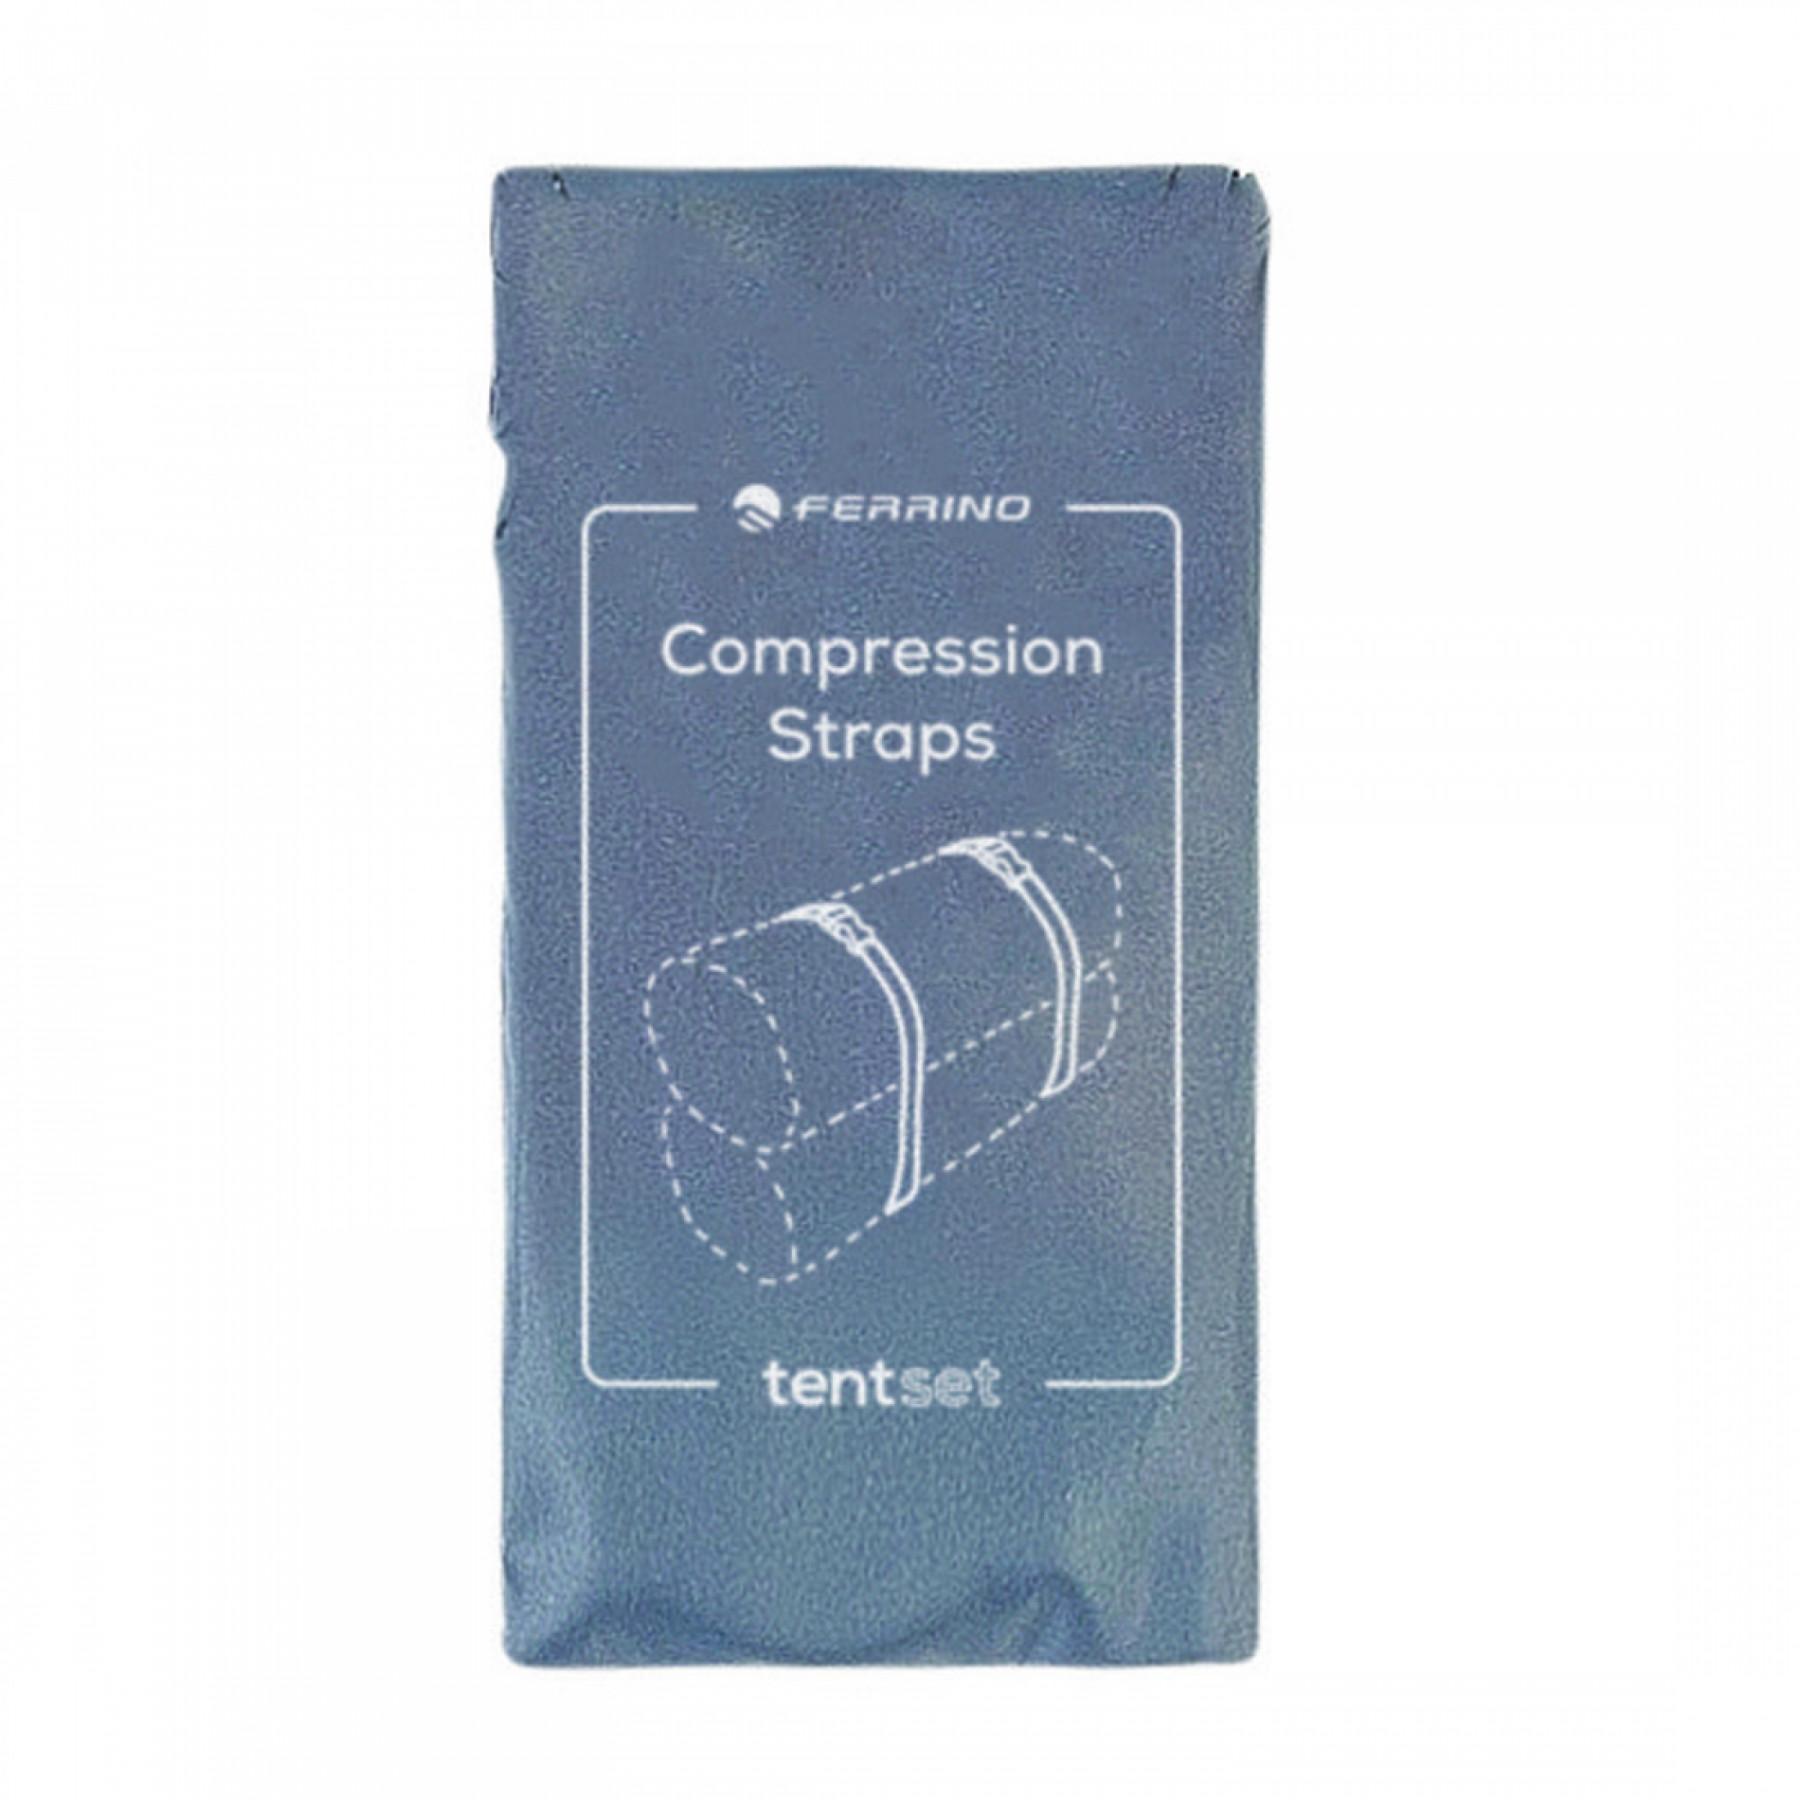 Compression straps Ferrino